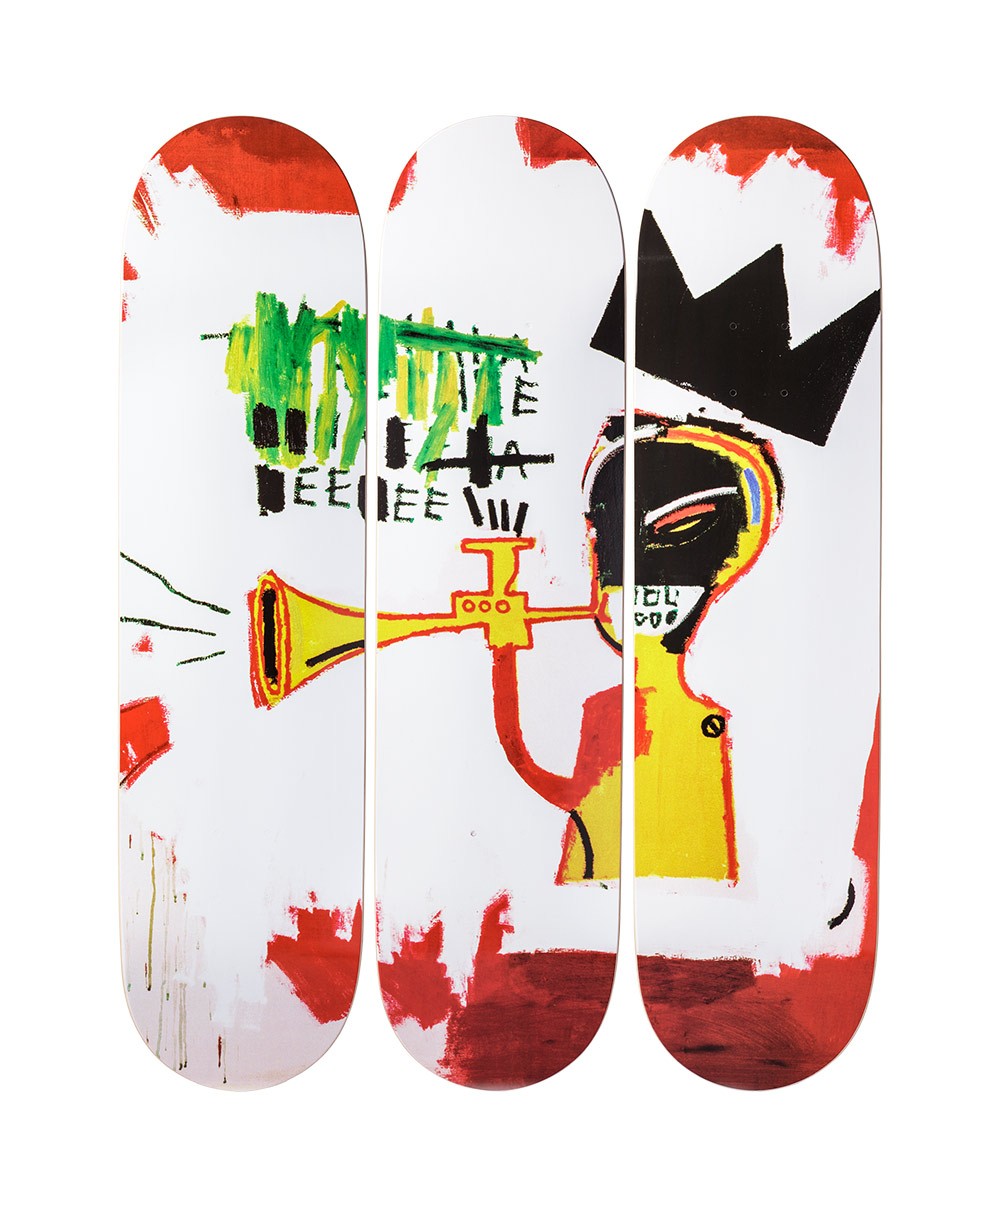 Produktbild "Trumpet" designed by Jean-Michel Basquiat von The Skateroom im RAUM Conceptstore